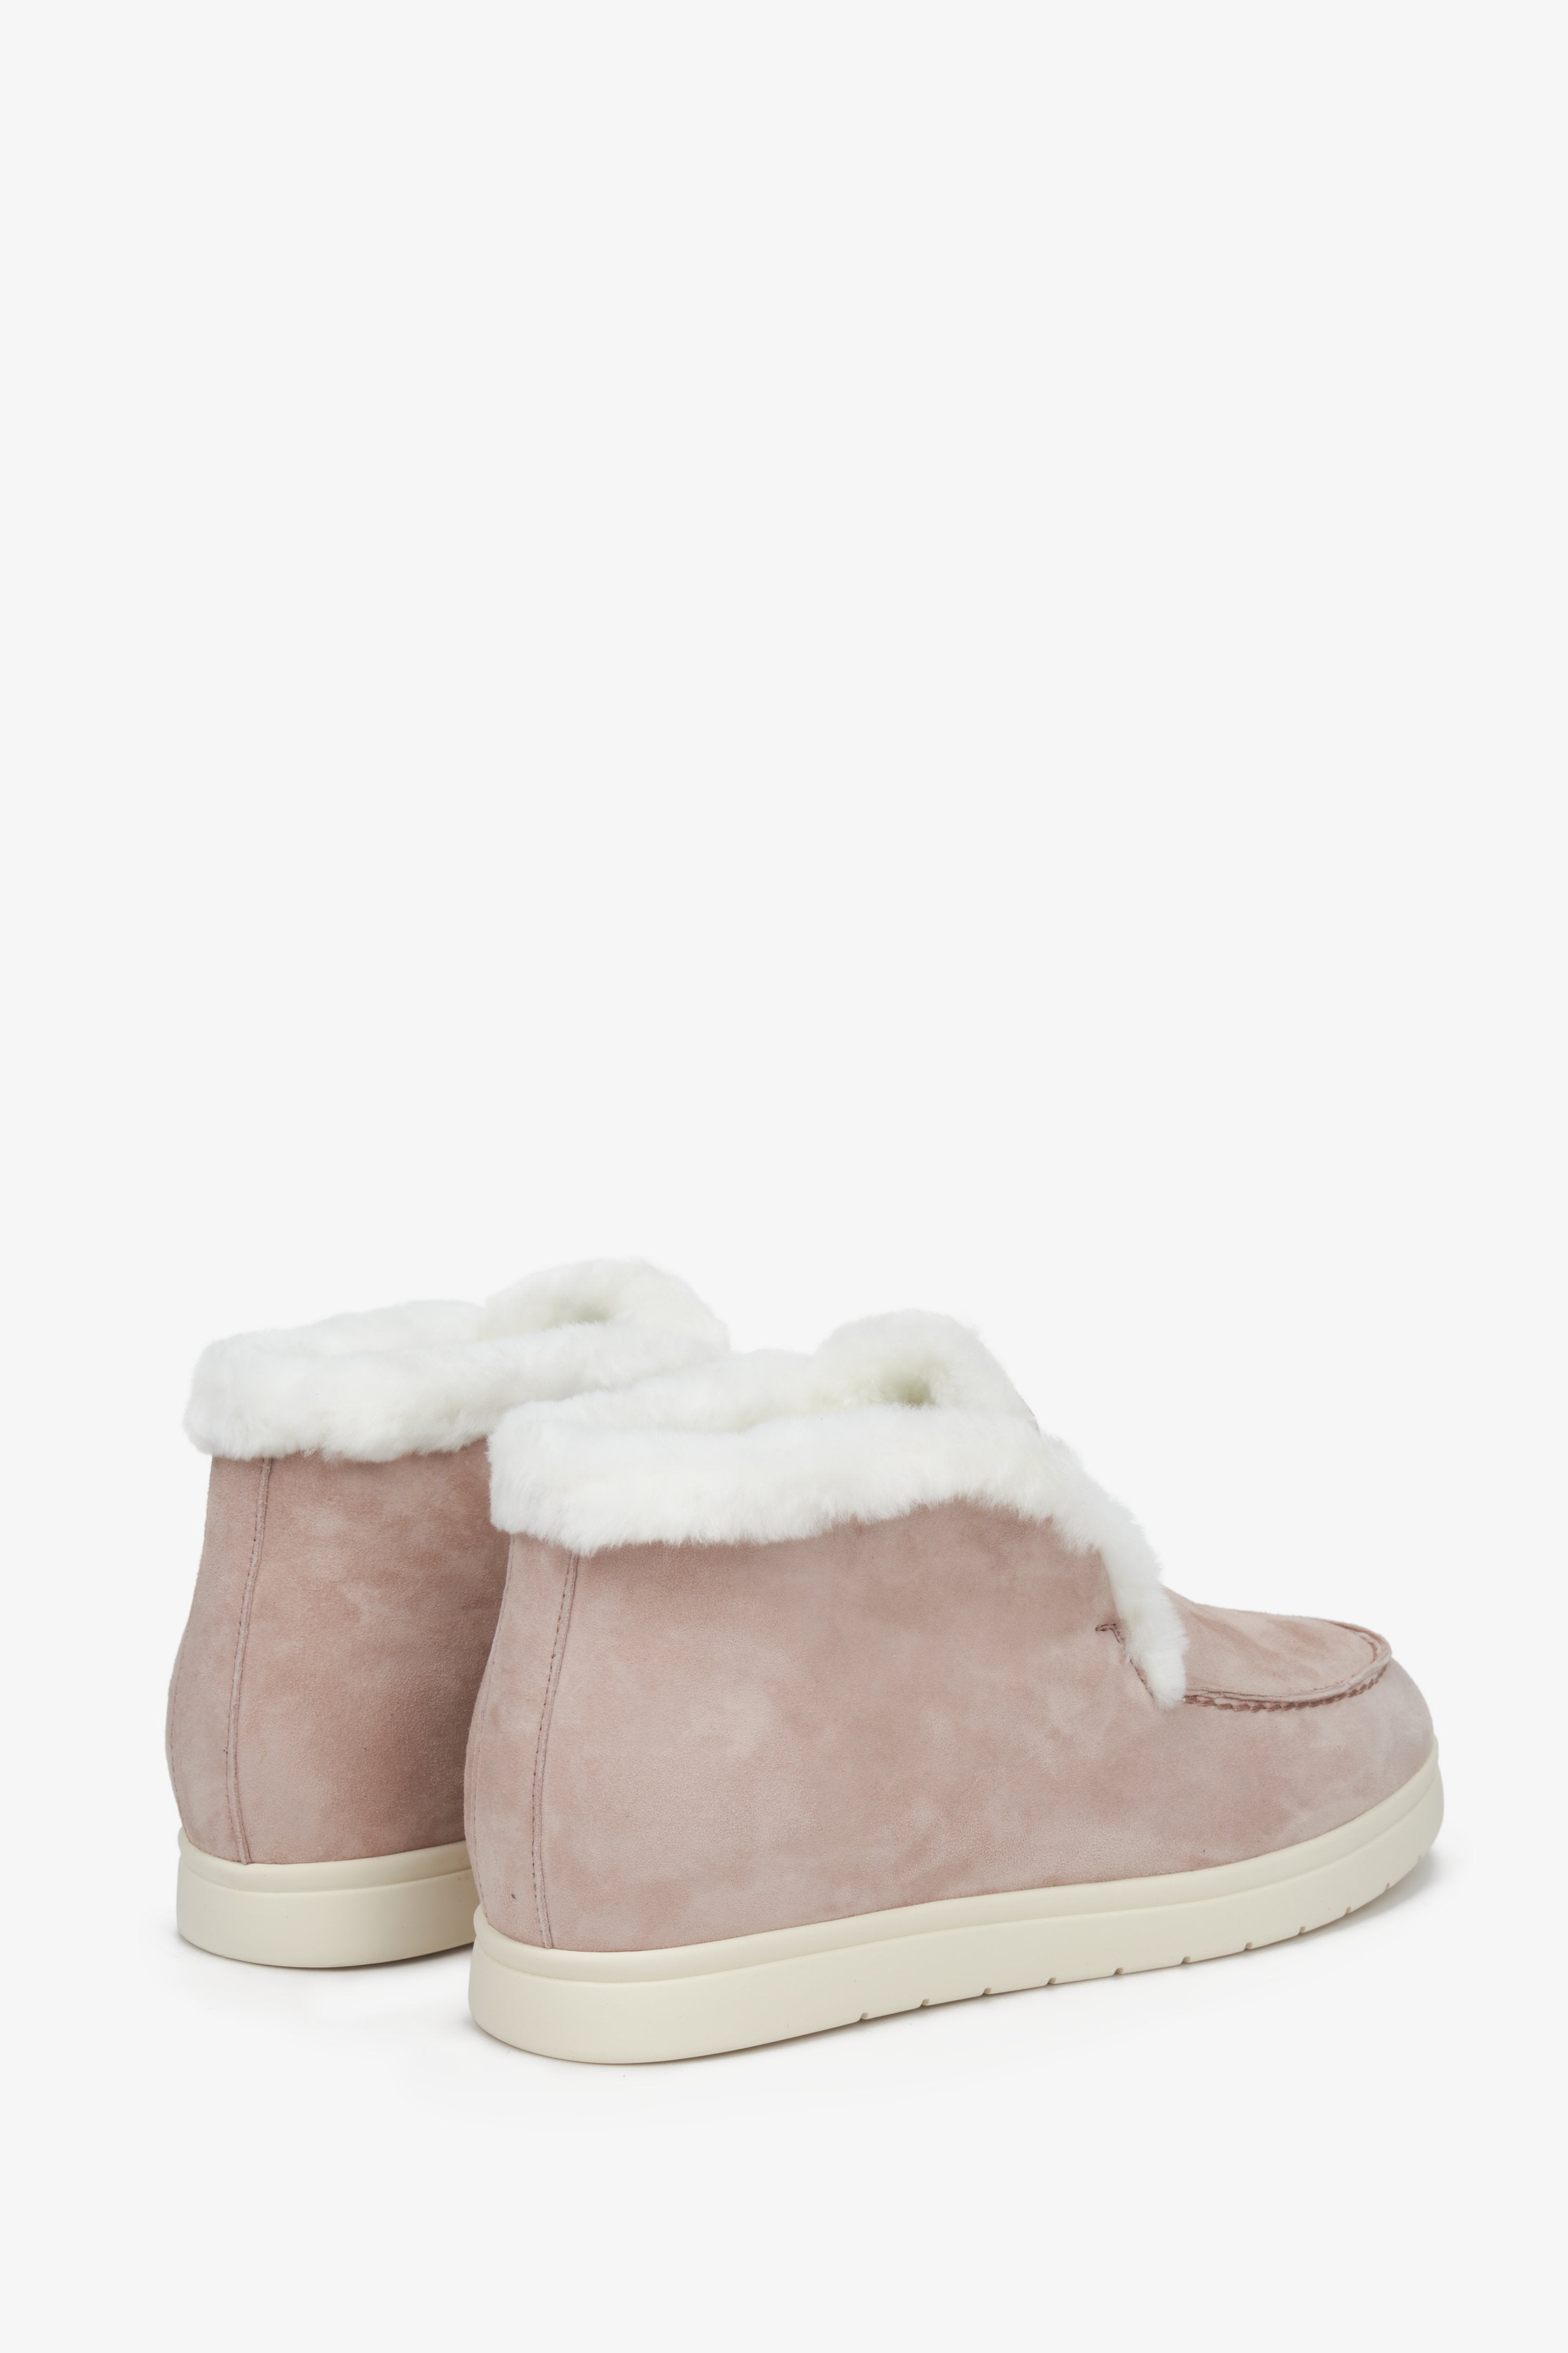 Podwyższane mokasyny damskie na zimę z zamszu z futrem naturalnym w kolorze różowym - zbliżenie na tył buta.